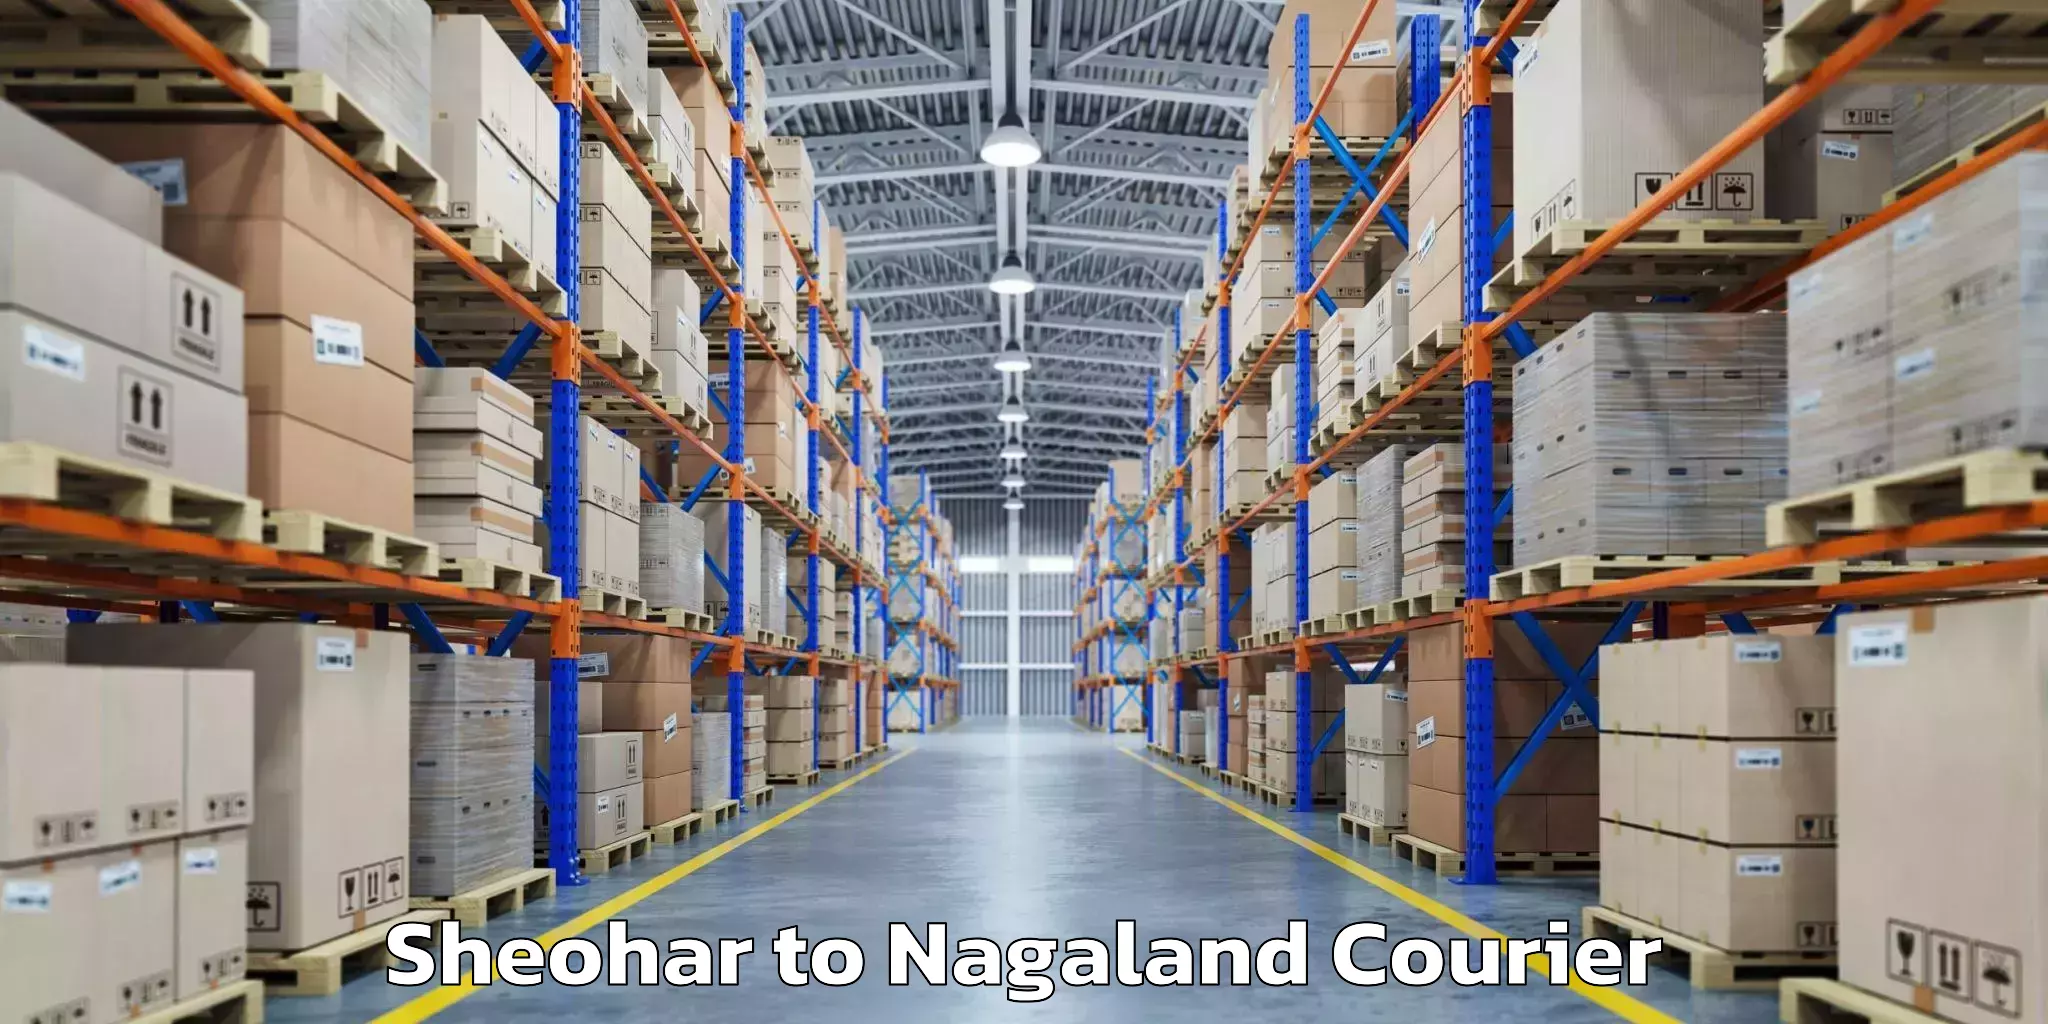 Baggage shipping service Sheohar to Nagaland